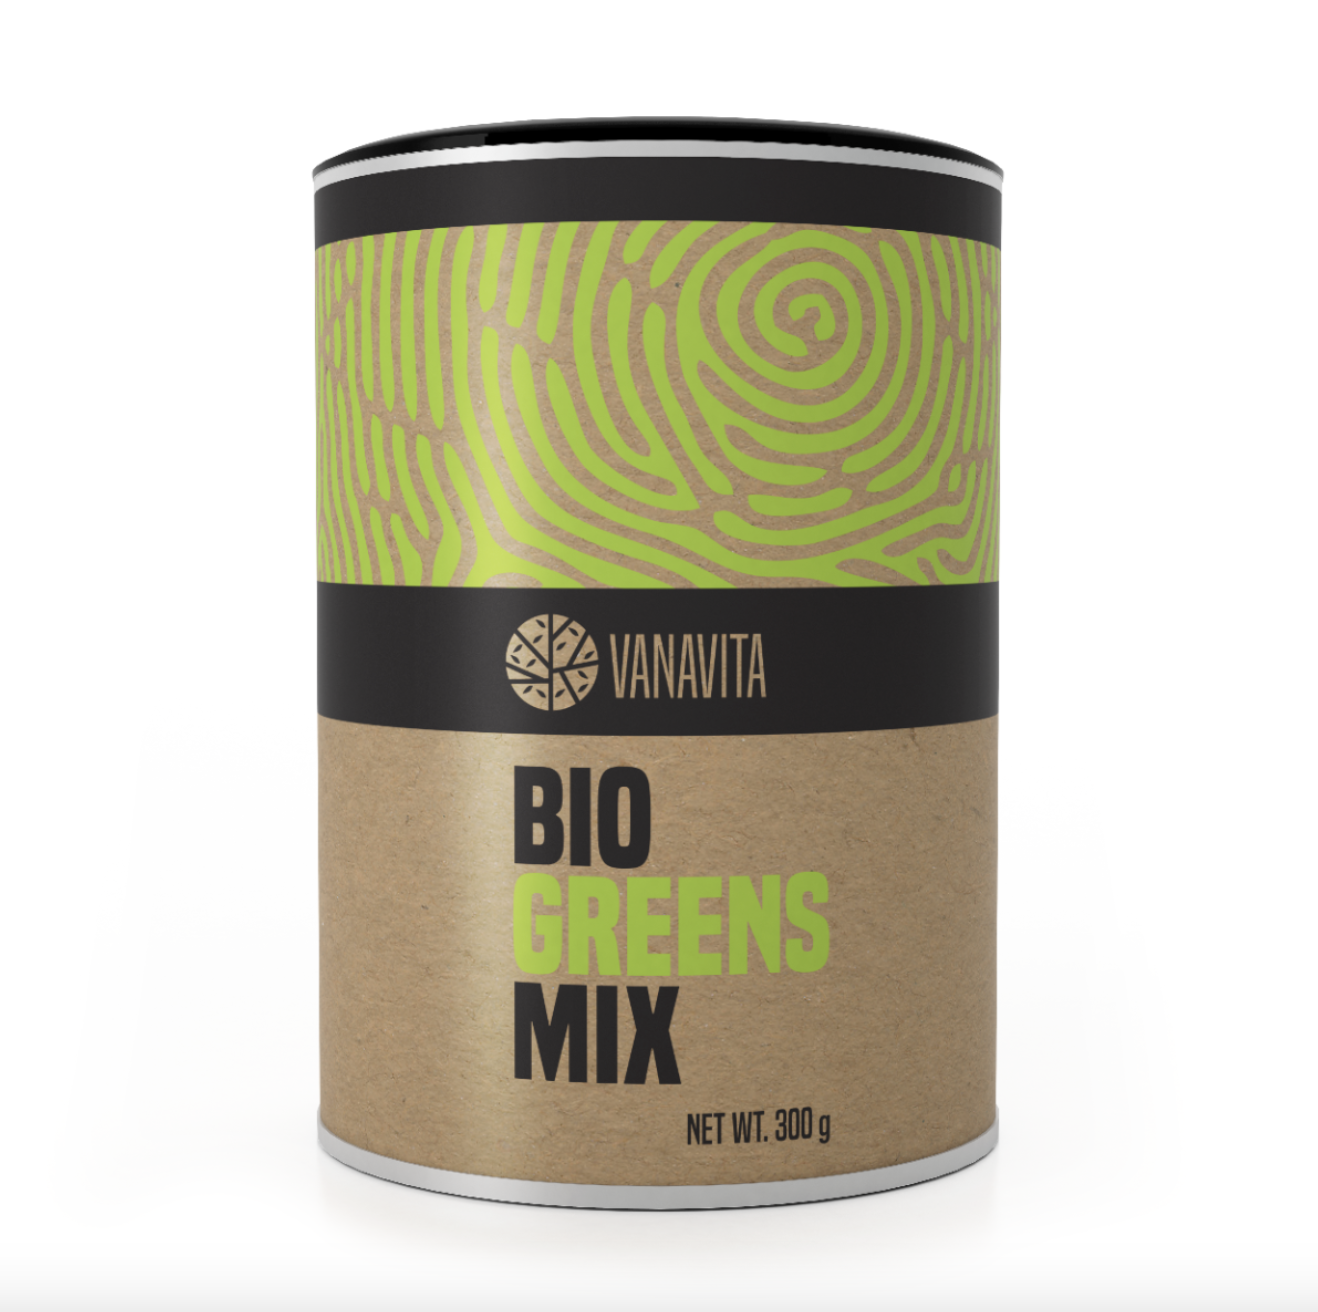 BIO Greens Mix from VanaVita